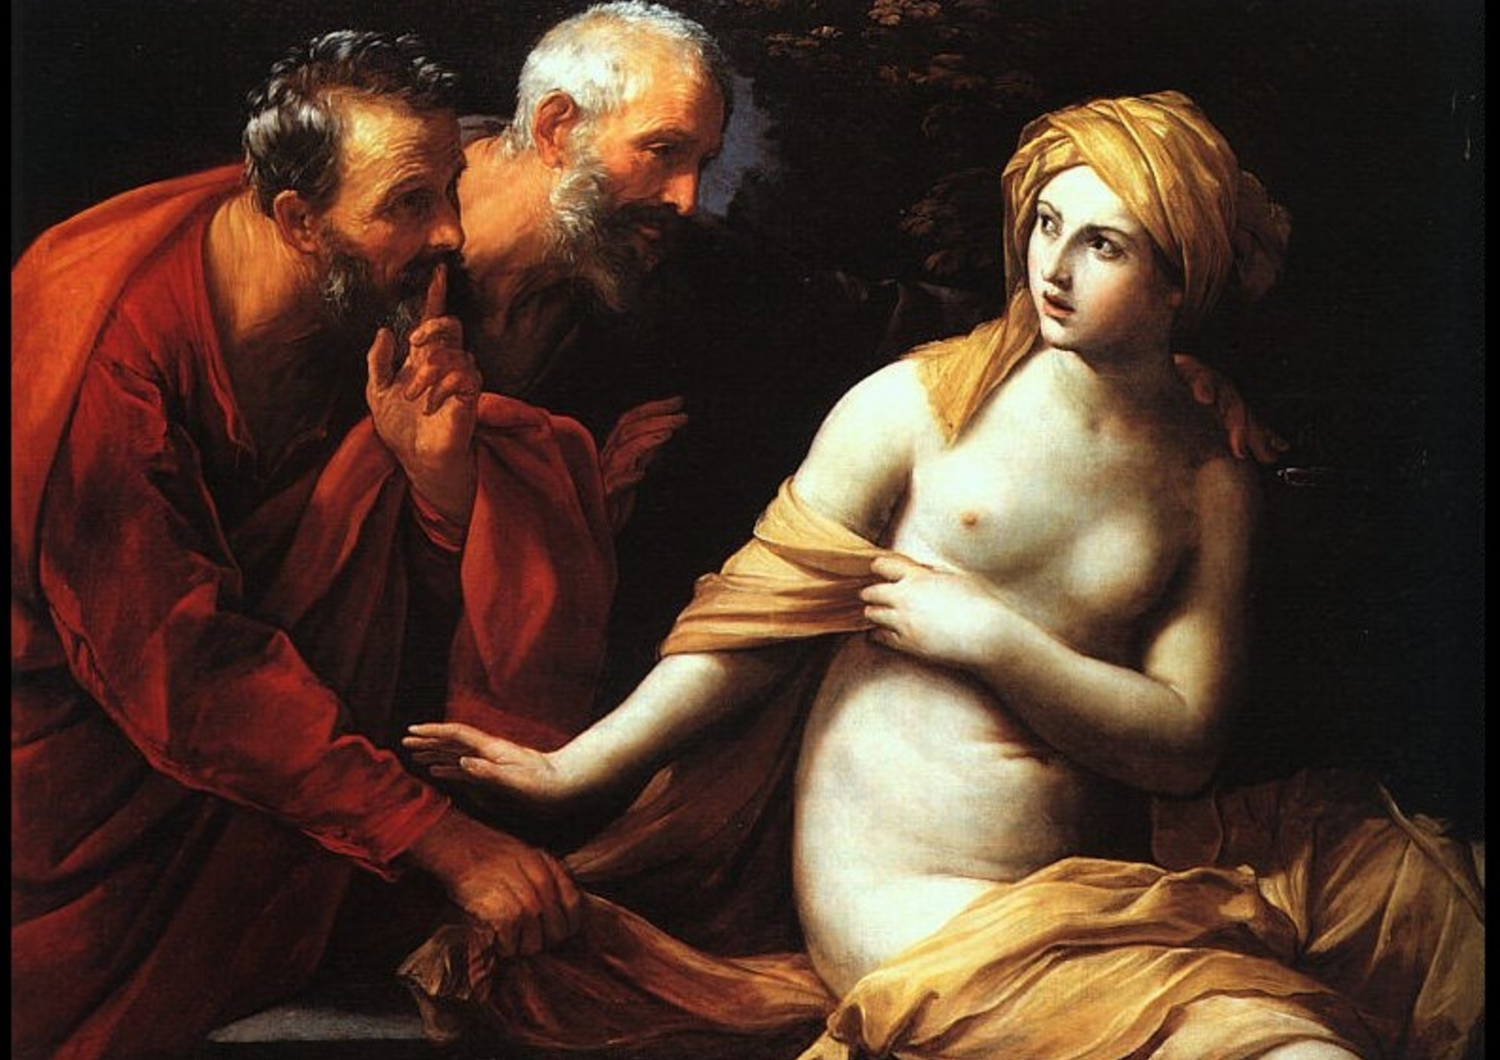 Susanna e i vecchioni di Guido Reni, 1620